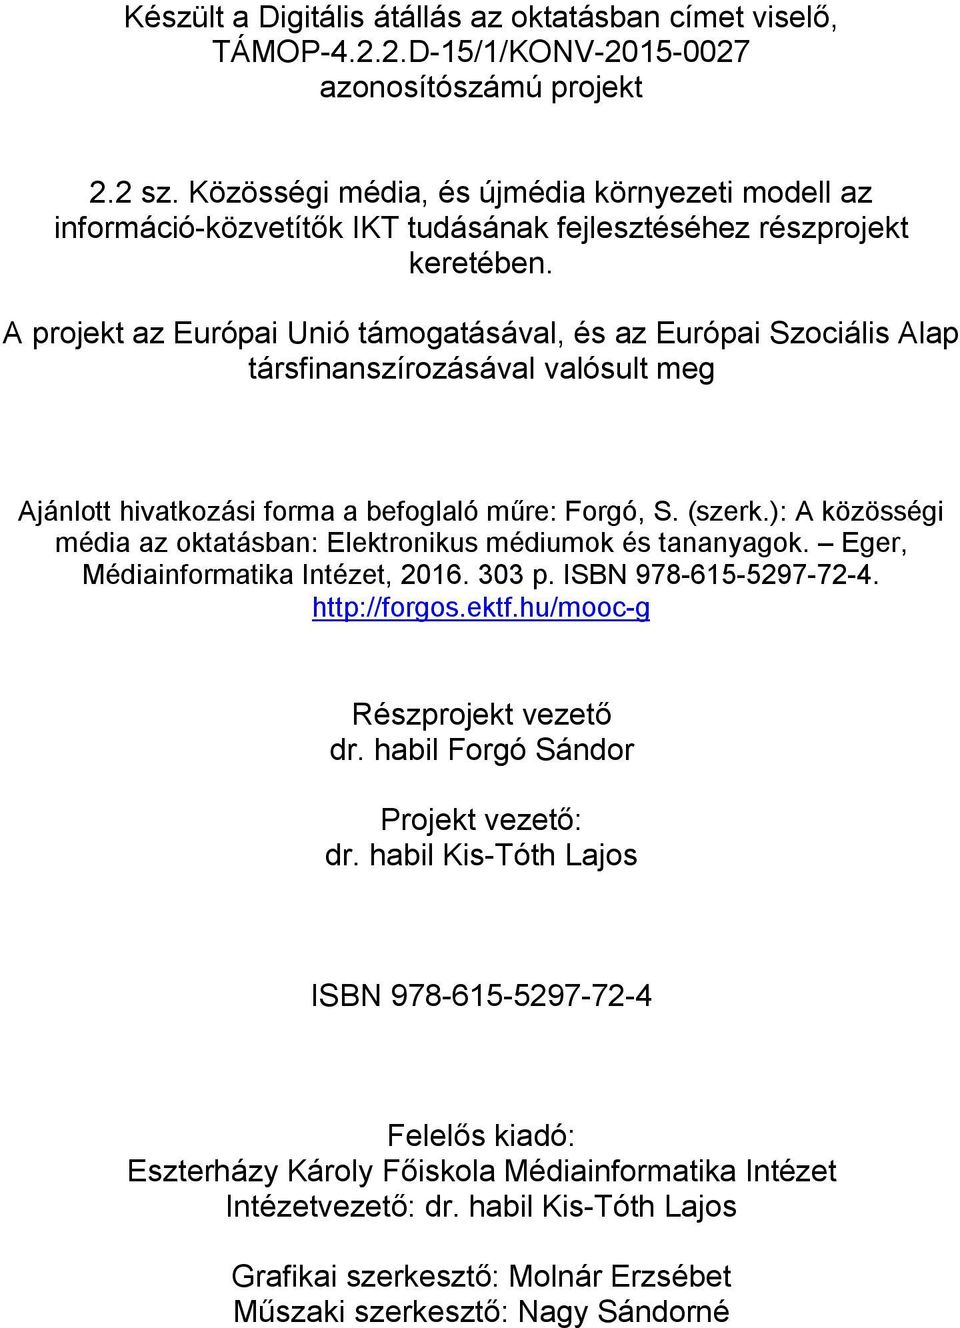 A projekt az Európai Unió támogatásával, és az Európai Szociális Alap társfinanszírozásával valósult meg Ajánlott hivatkozási forma a befoglaló műre: Forgó, S. (szerk.